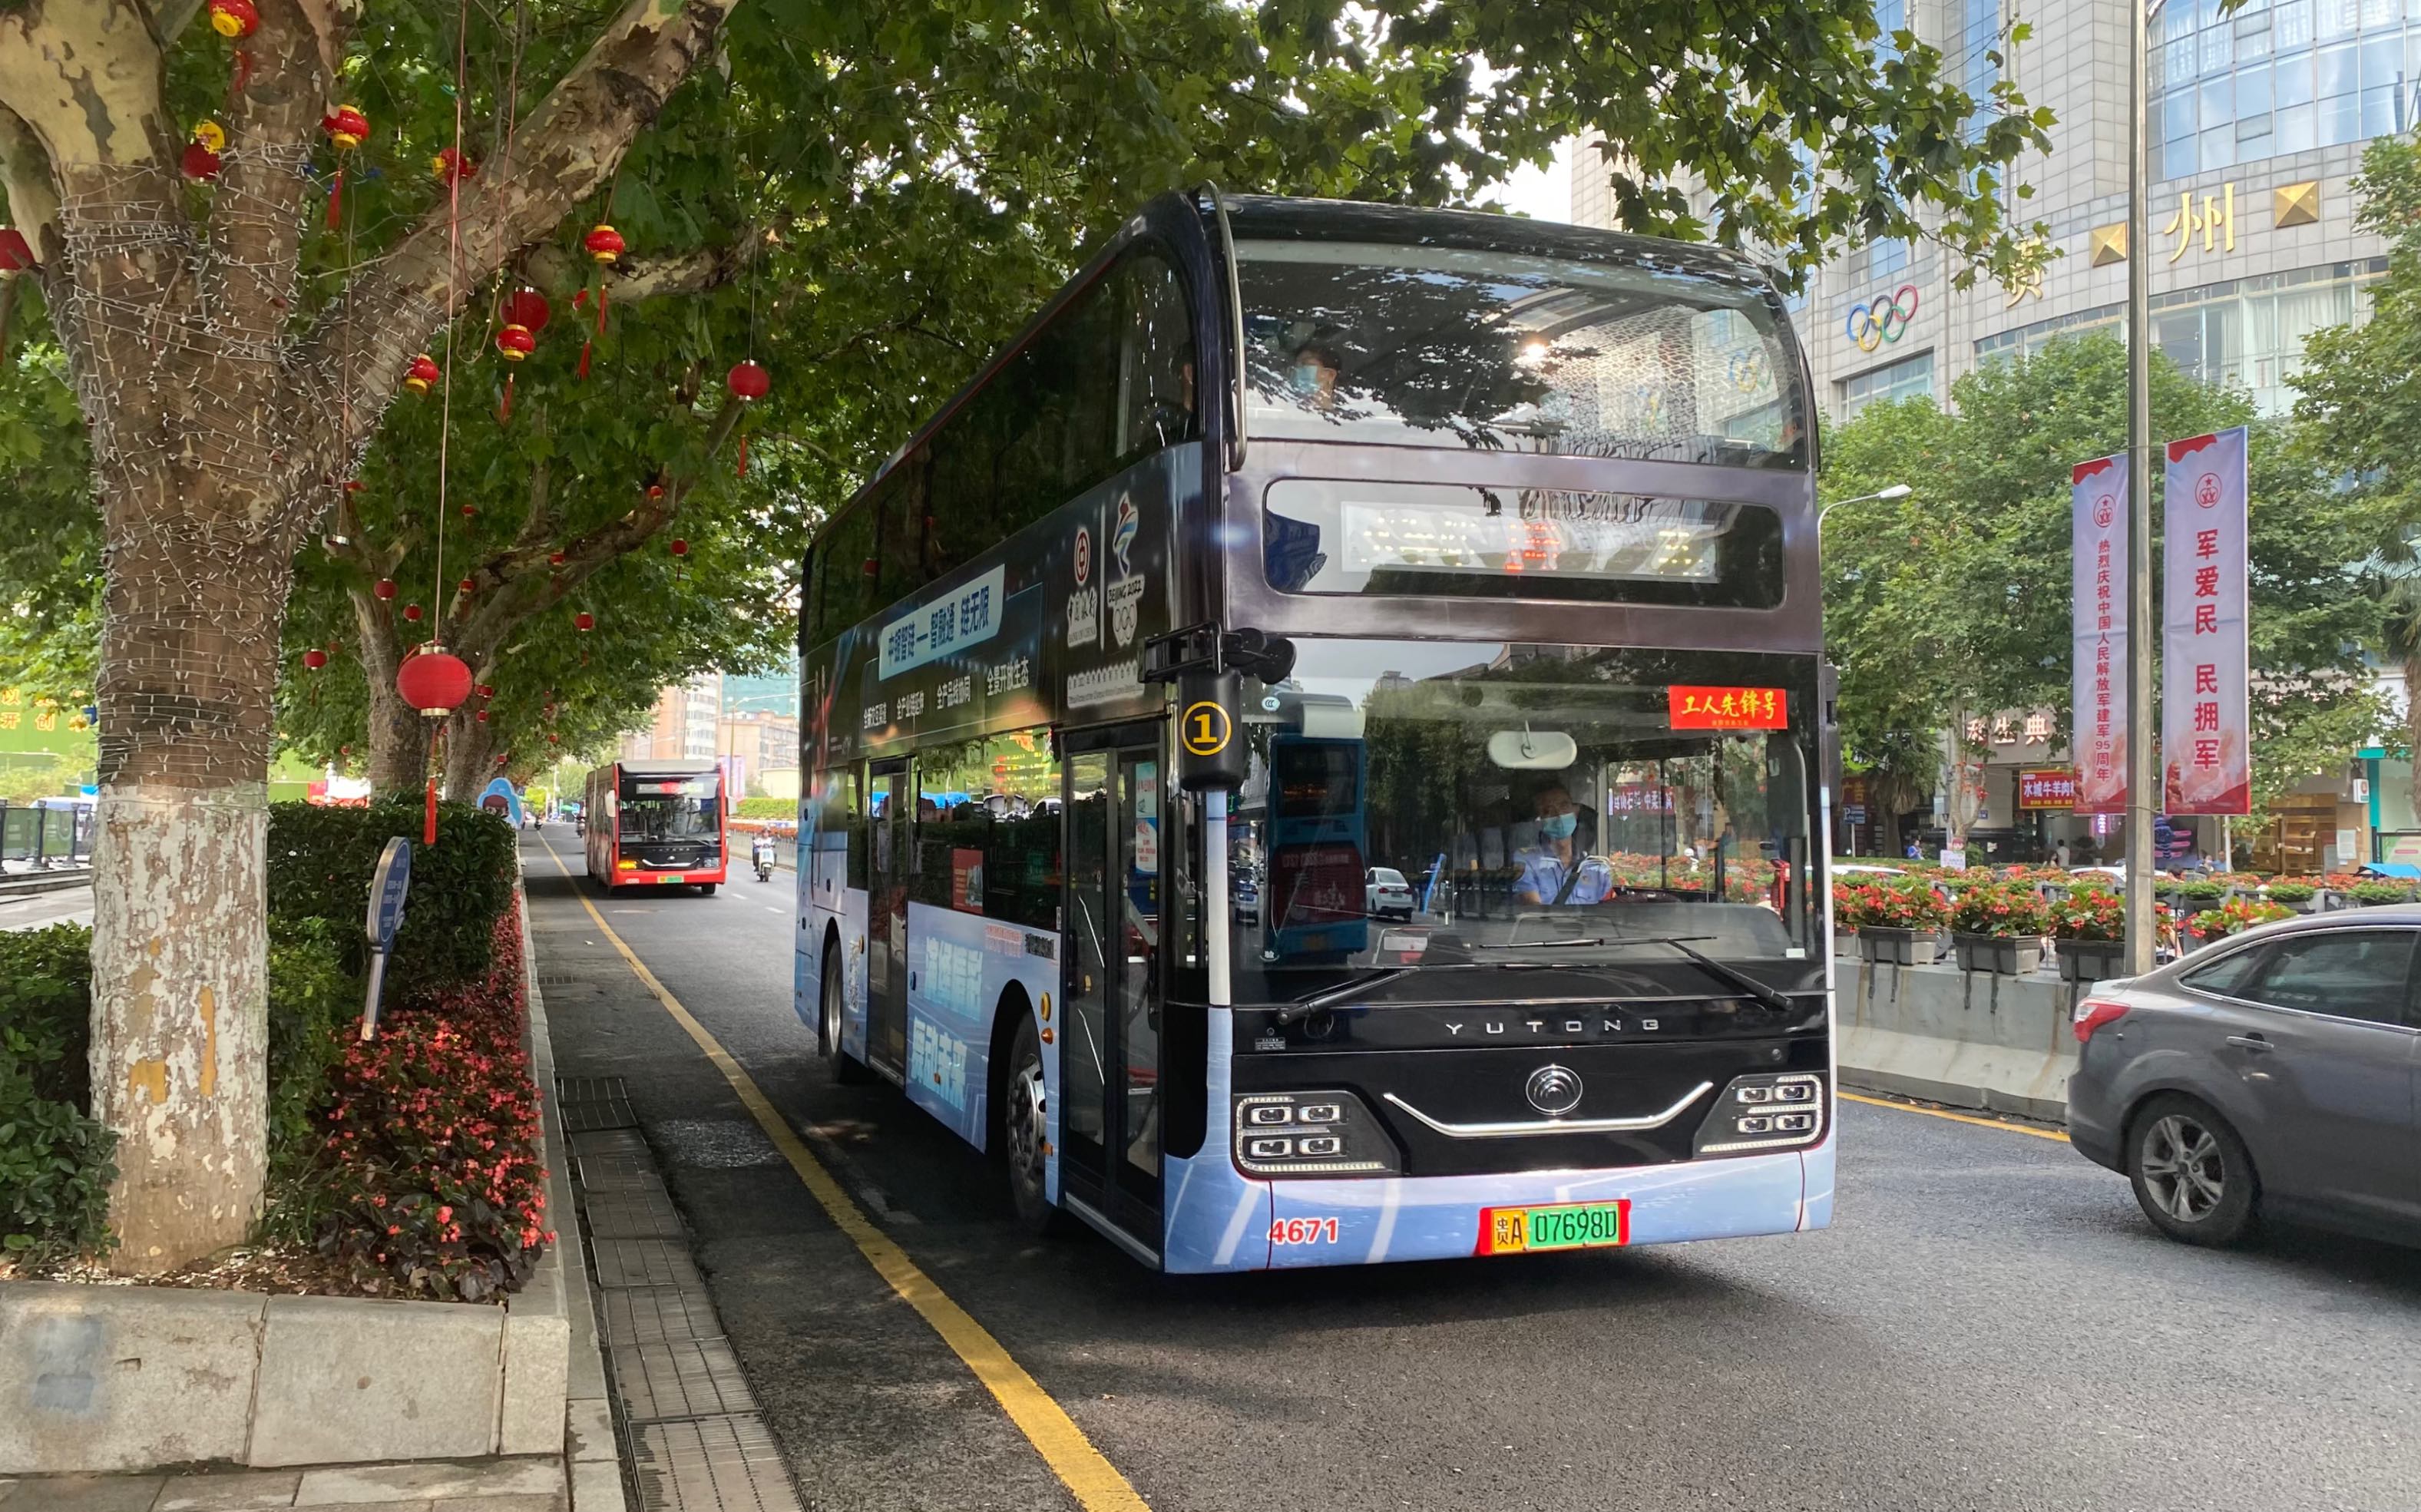 南京1路双层巴士图片图片